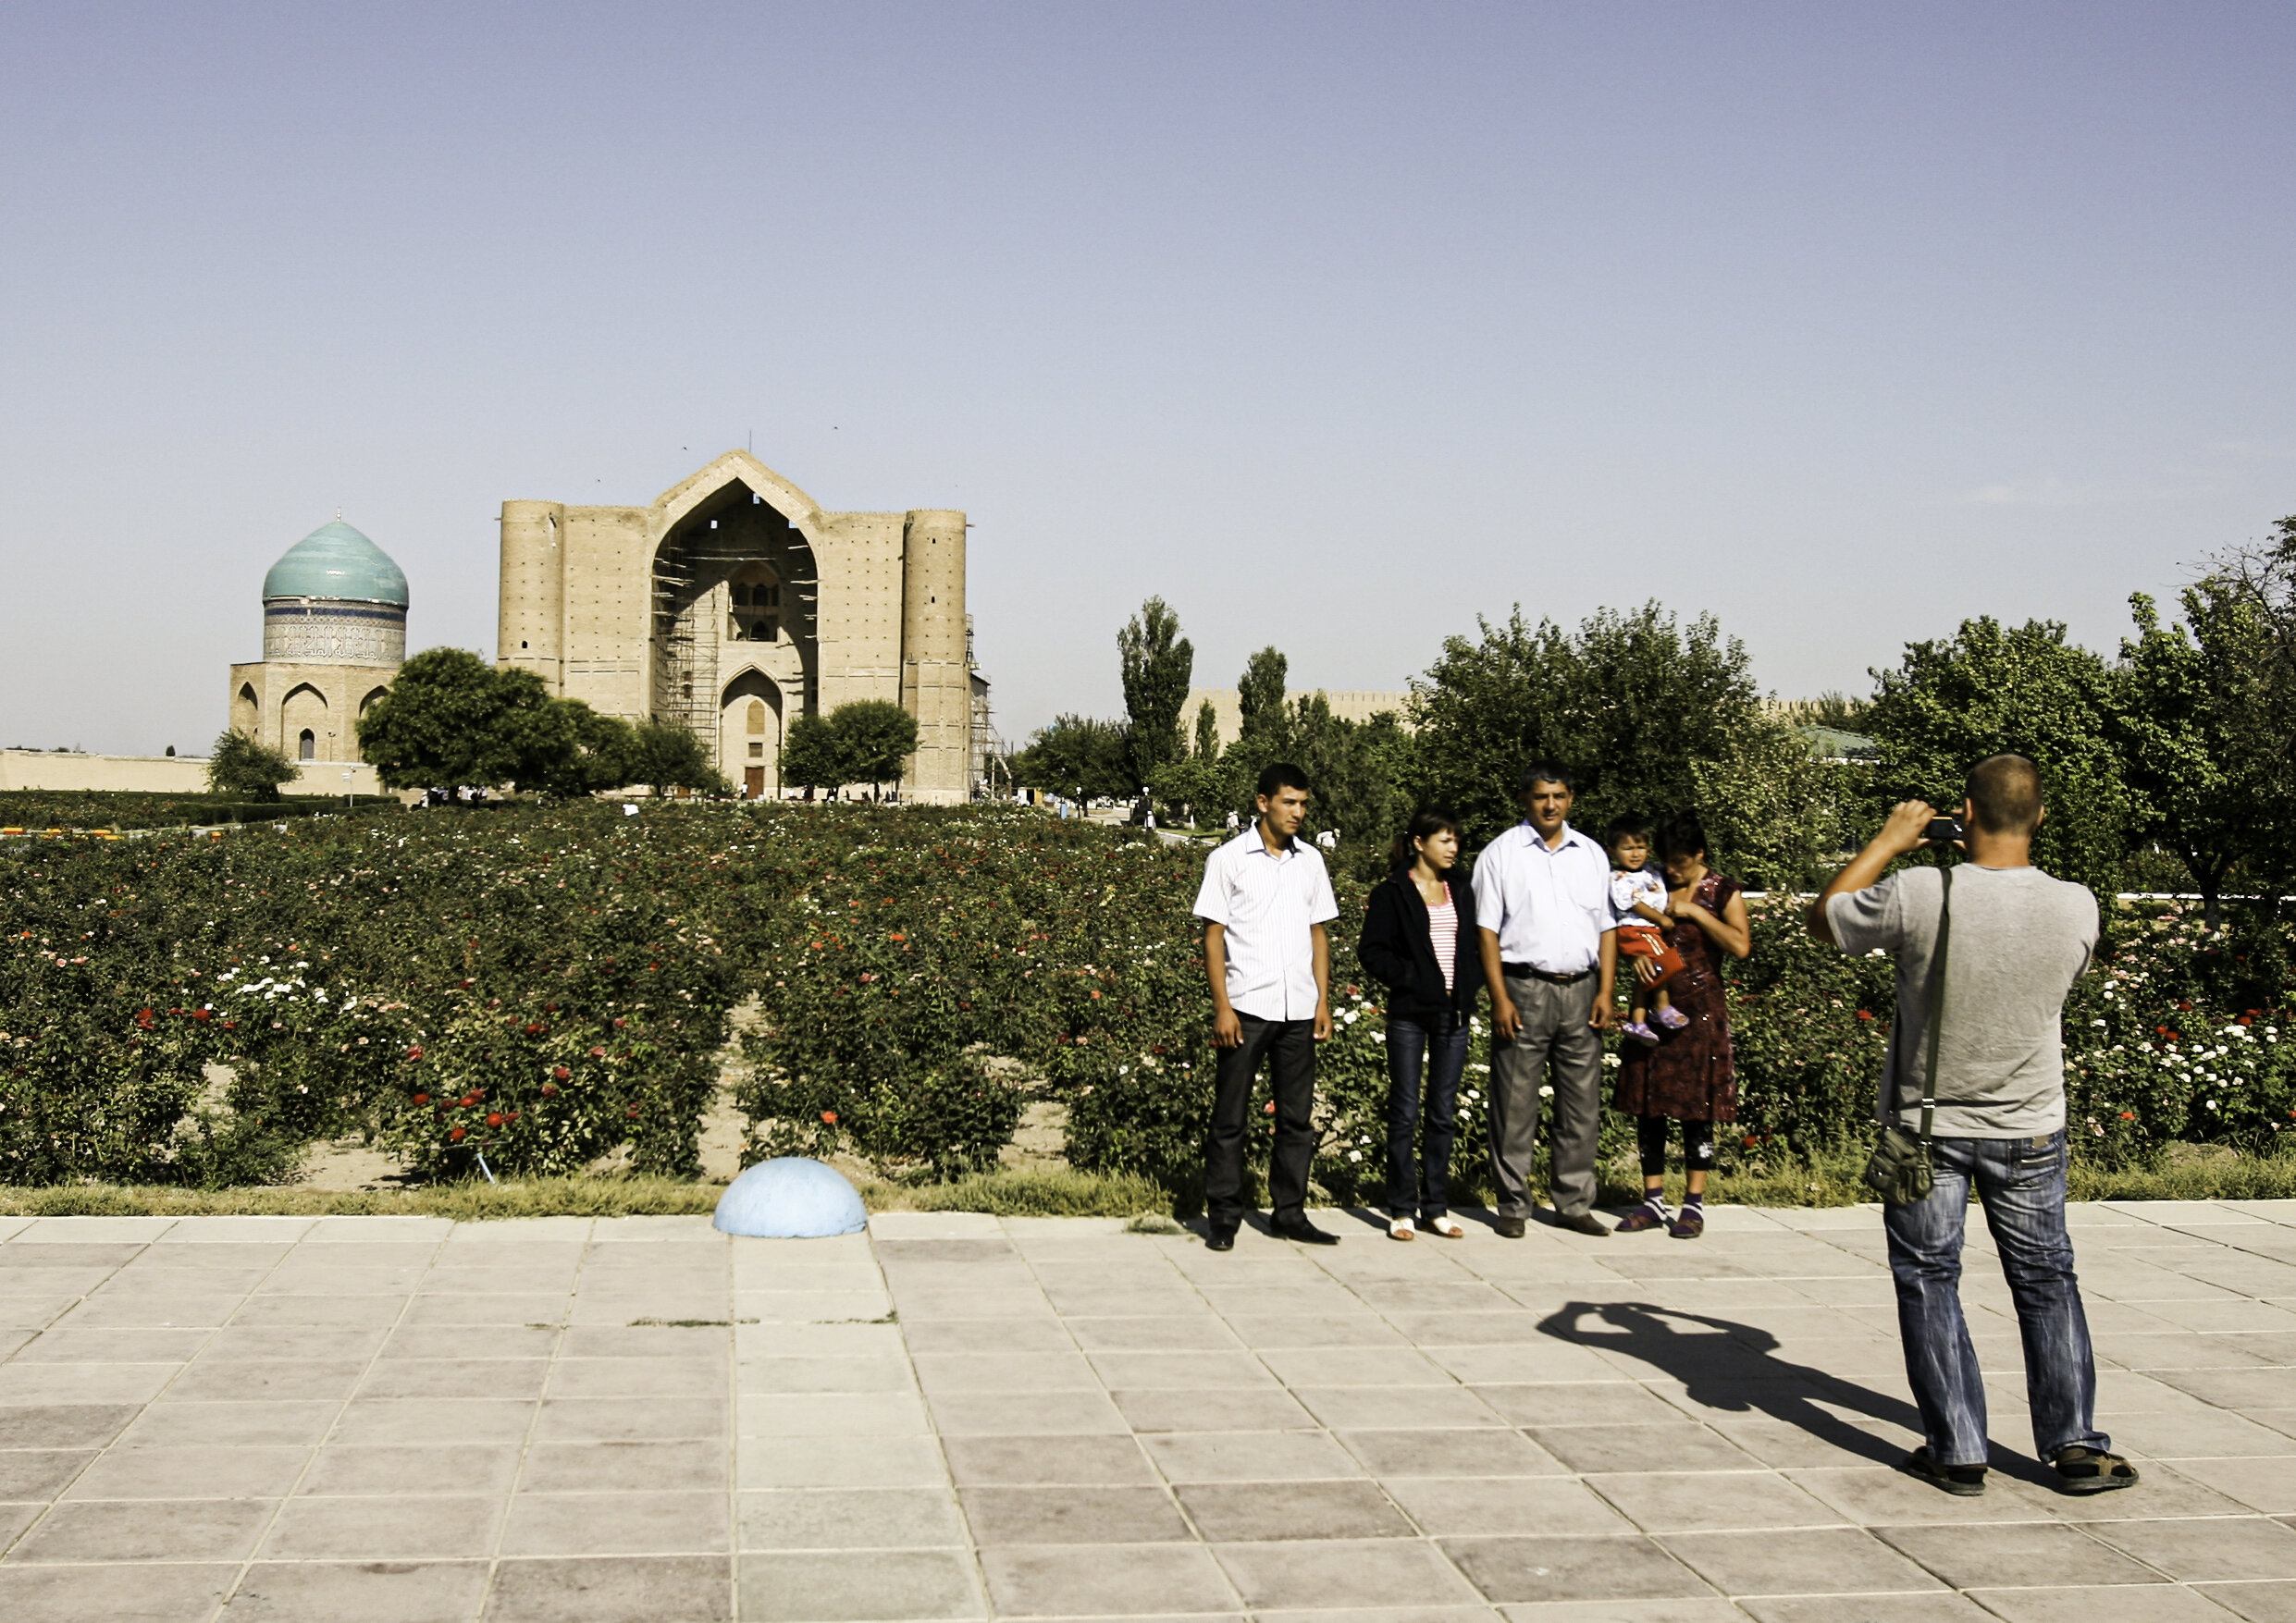 Mausoleum of Ahmed Yasawi - Kazakhstan / 2010